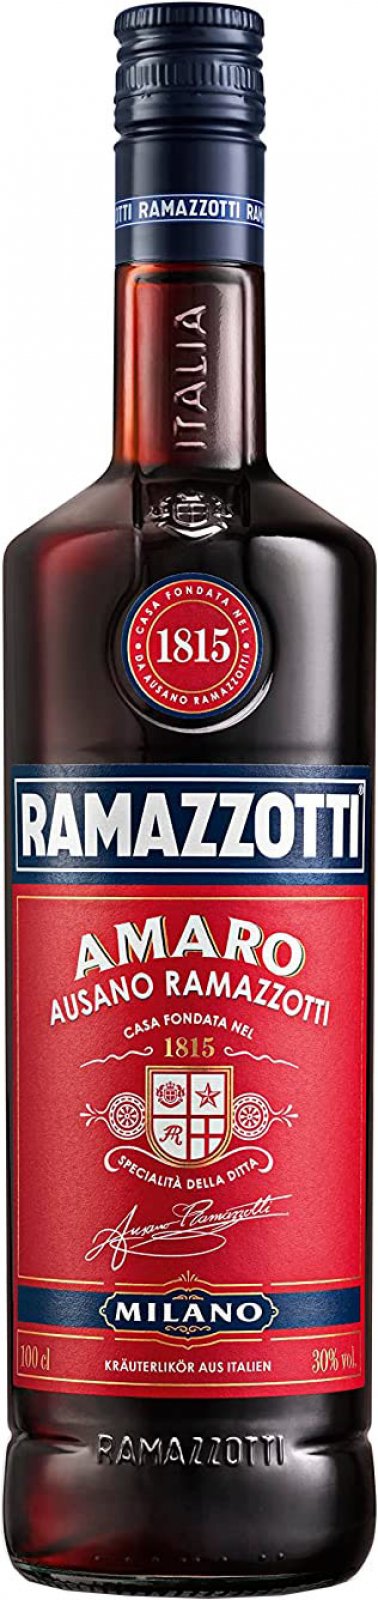 Ramazzotti Amaro 1 Liter 30% Vol. im Shop | Likör